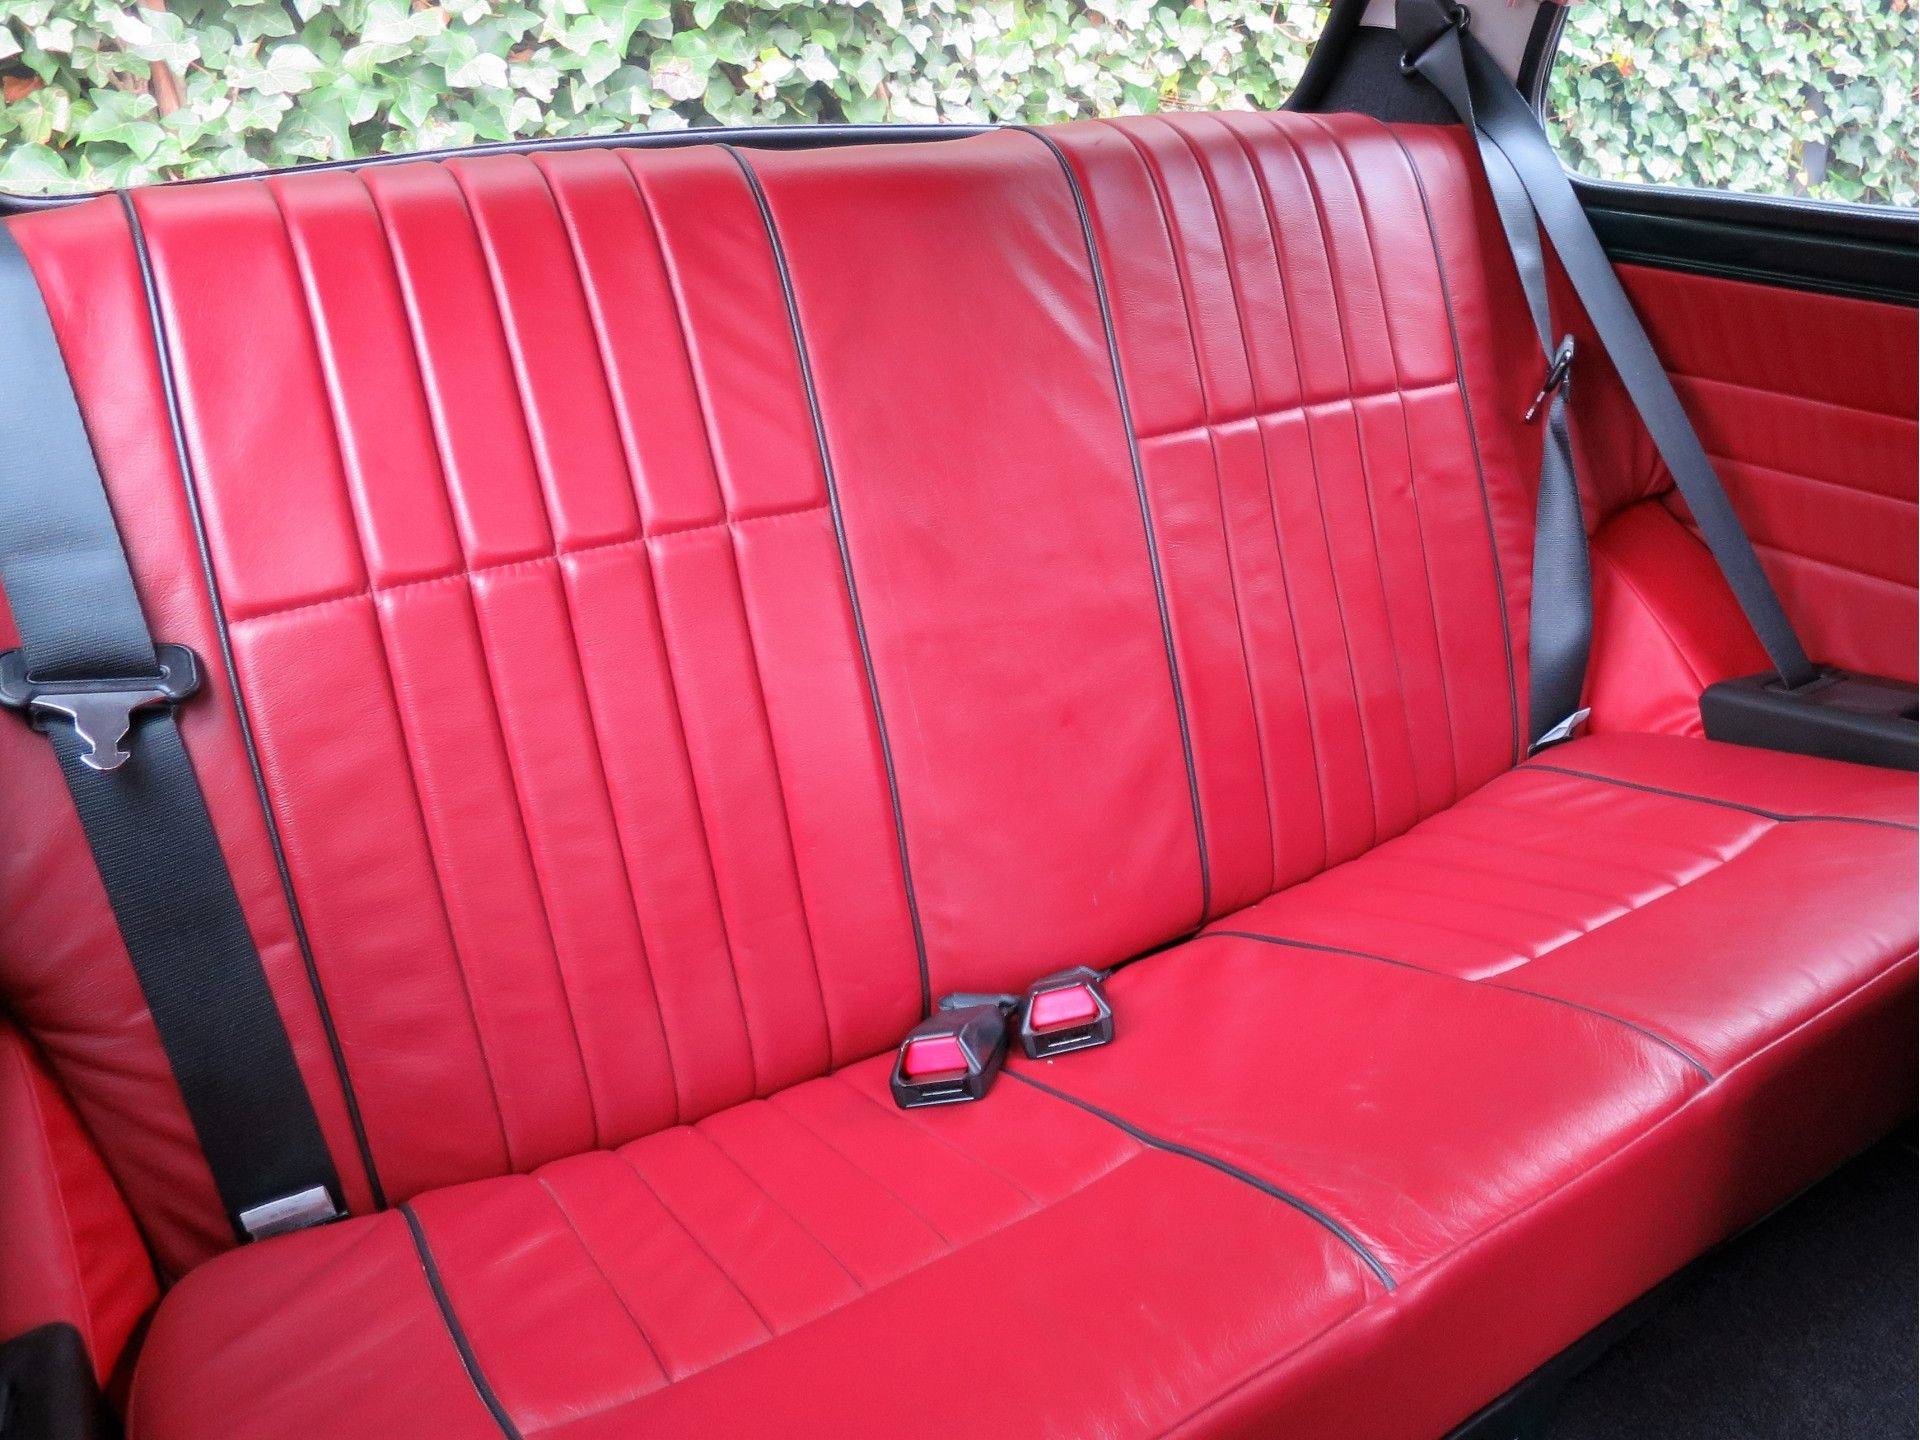 MINI Cooper Sport 1.3 MPI met leder interieur, houten dash en 13" velgen - 12/50